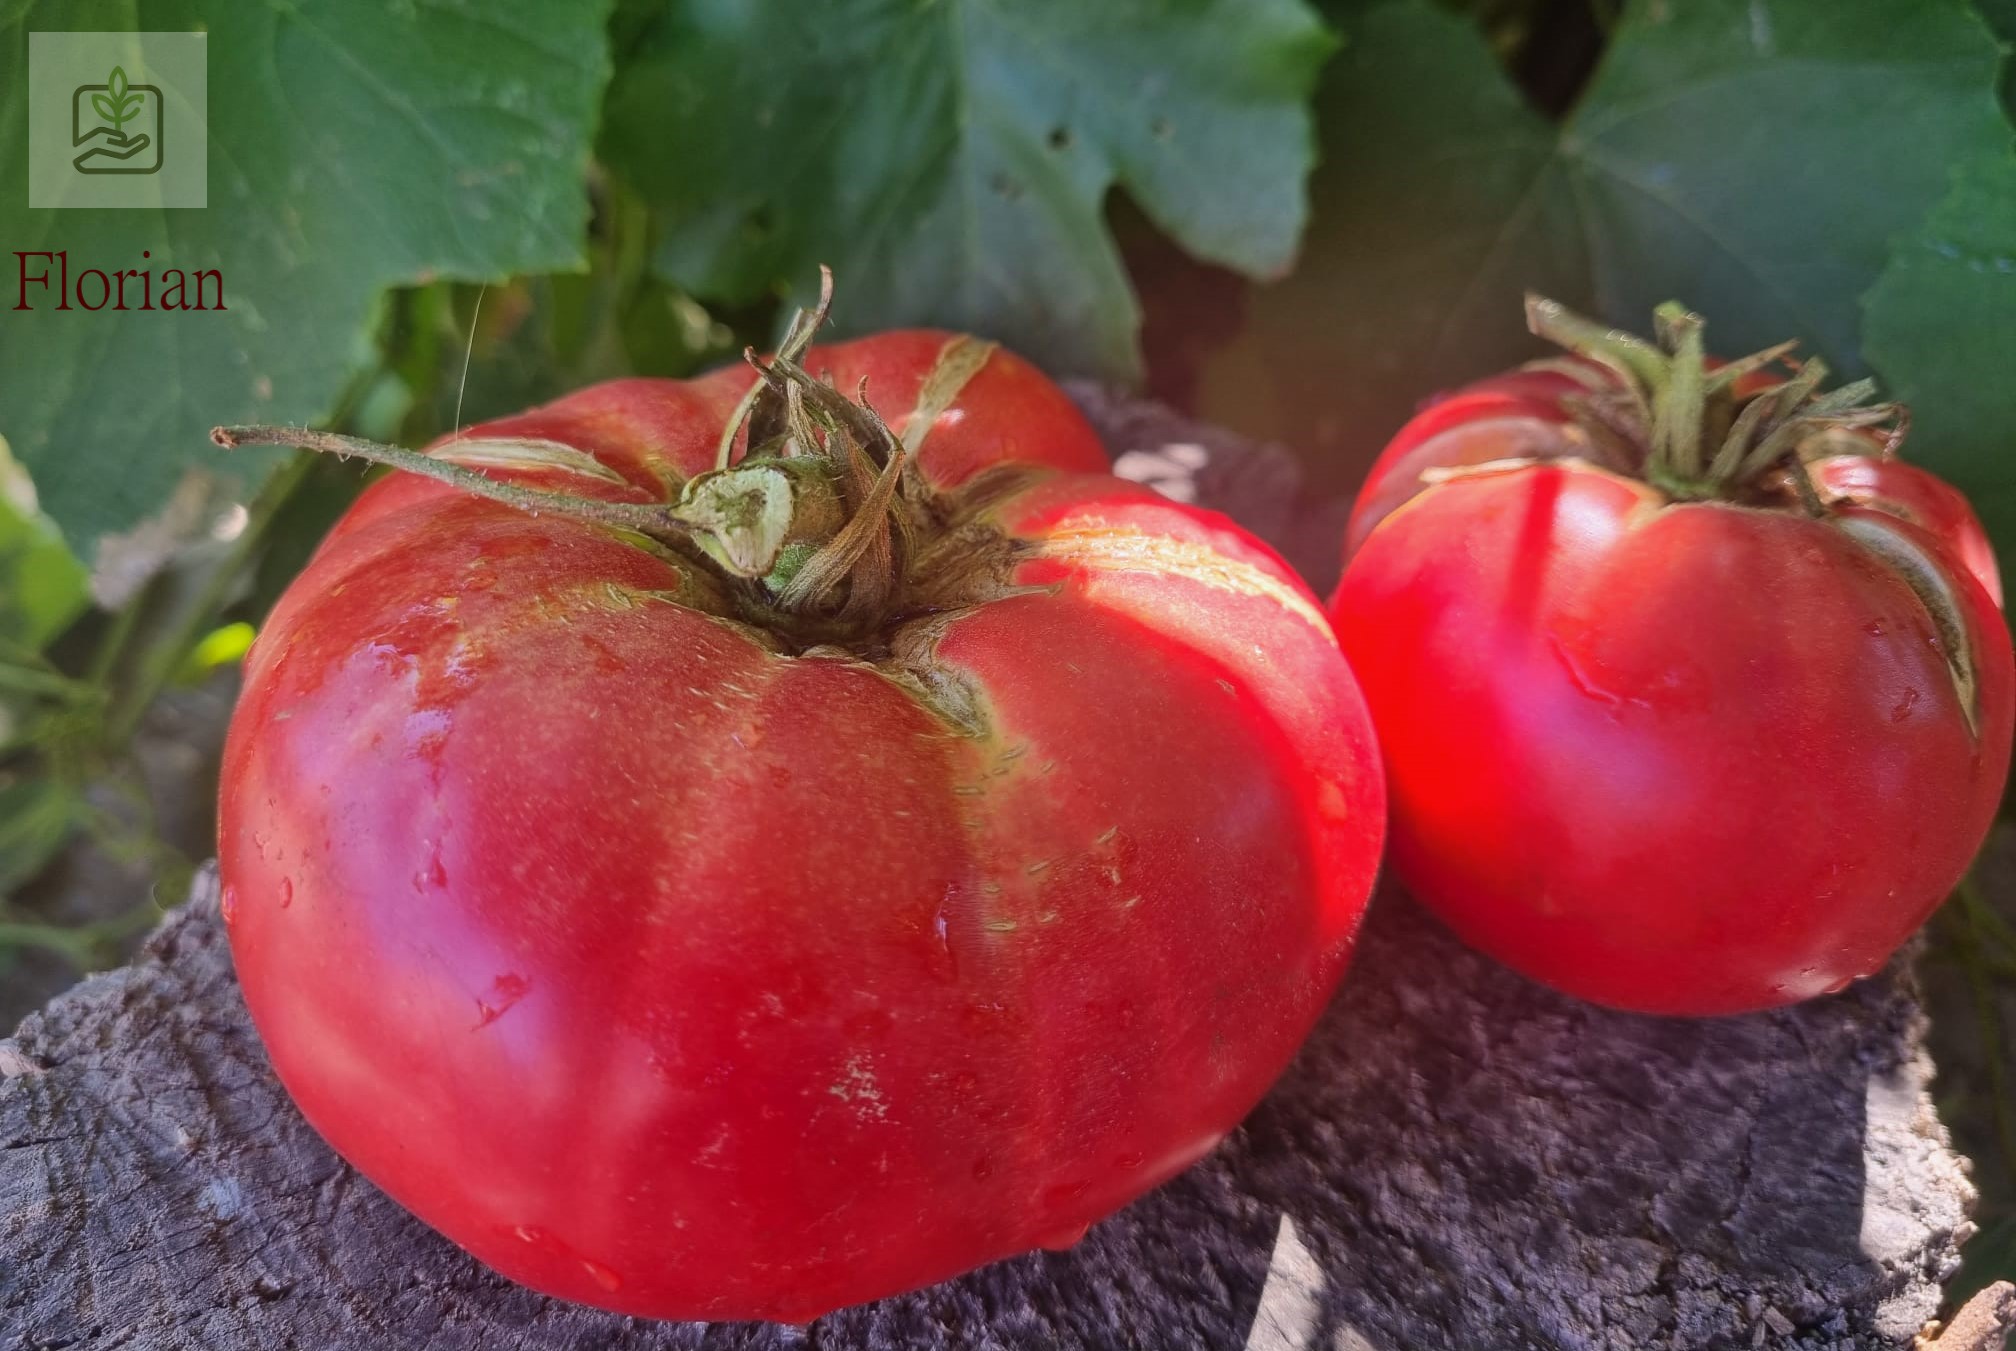 tomate Florian cultivate local in Bulgaria